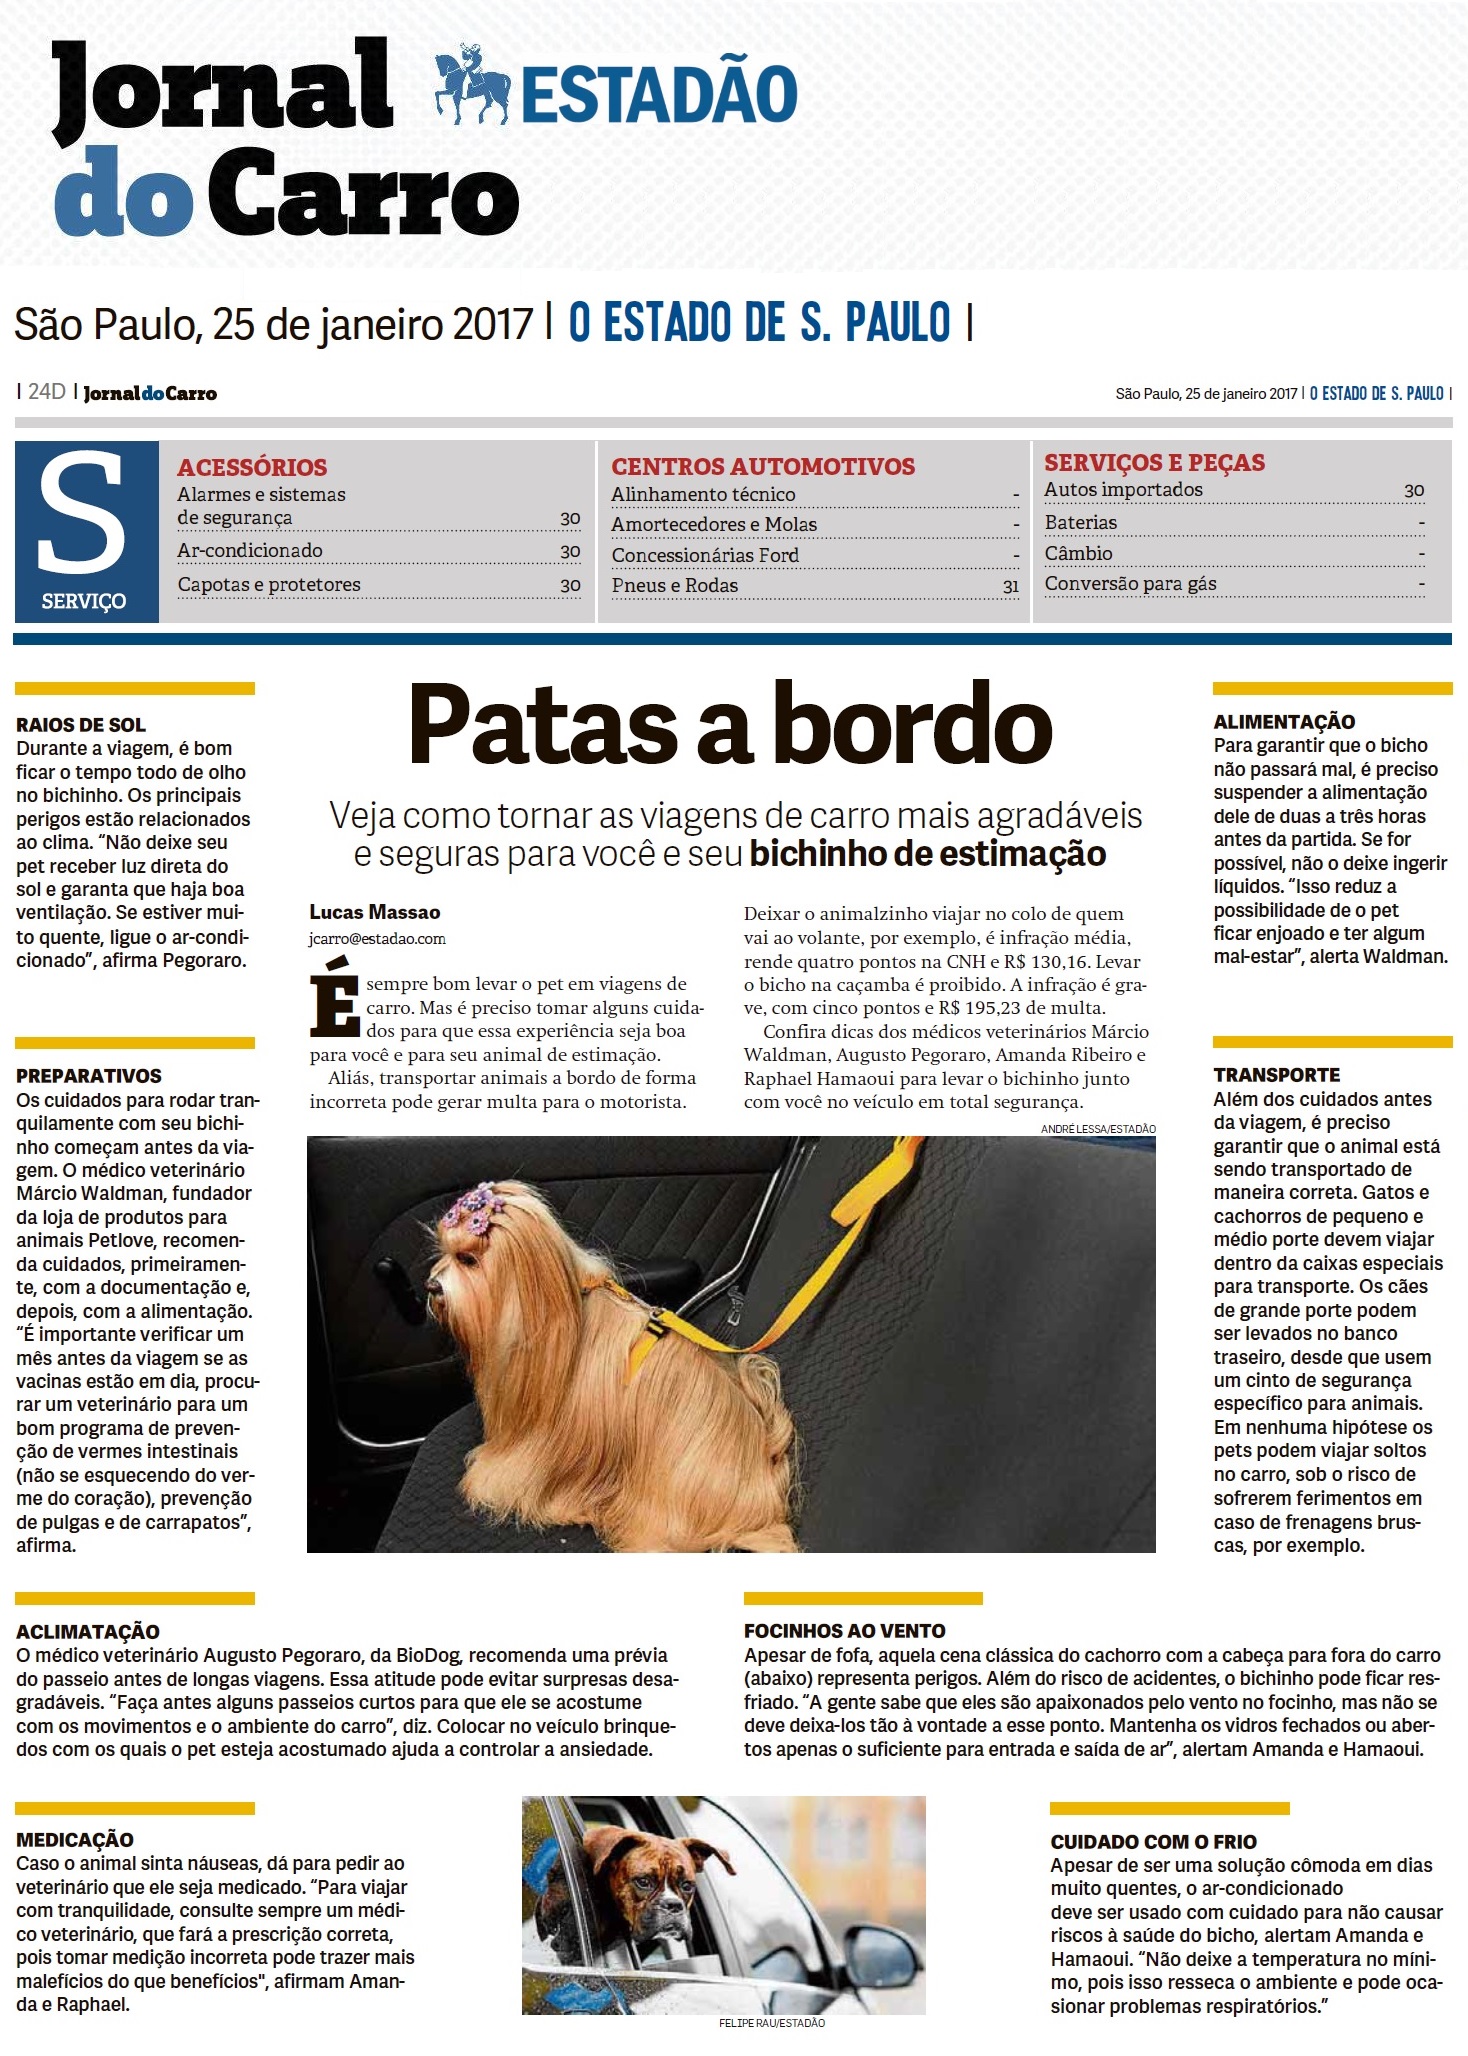 Novo site do Jornal do Carro está no ar - Jornal do Carro - Estadão